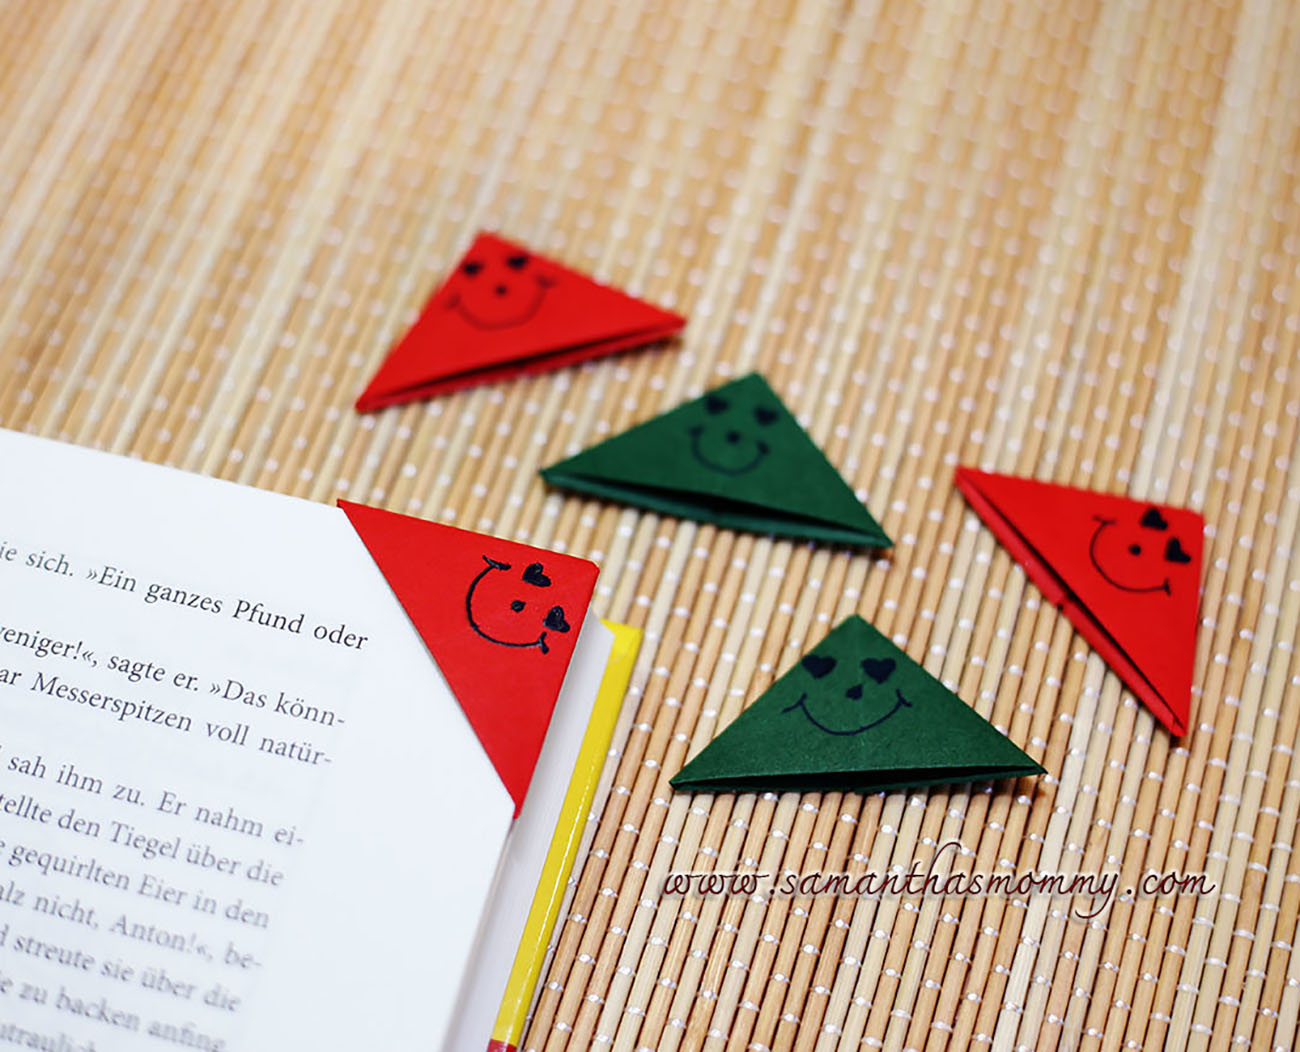 Уголки для учебников из бумаги: Как сделать закладку для книги своими руками